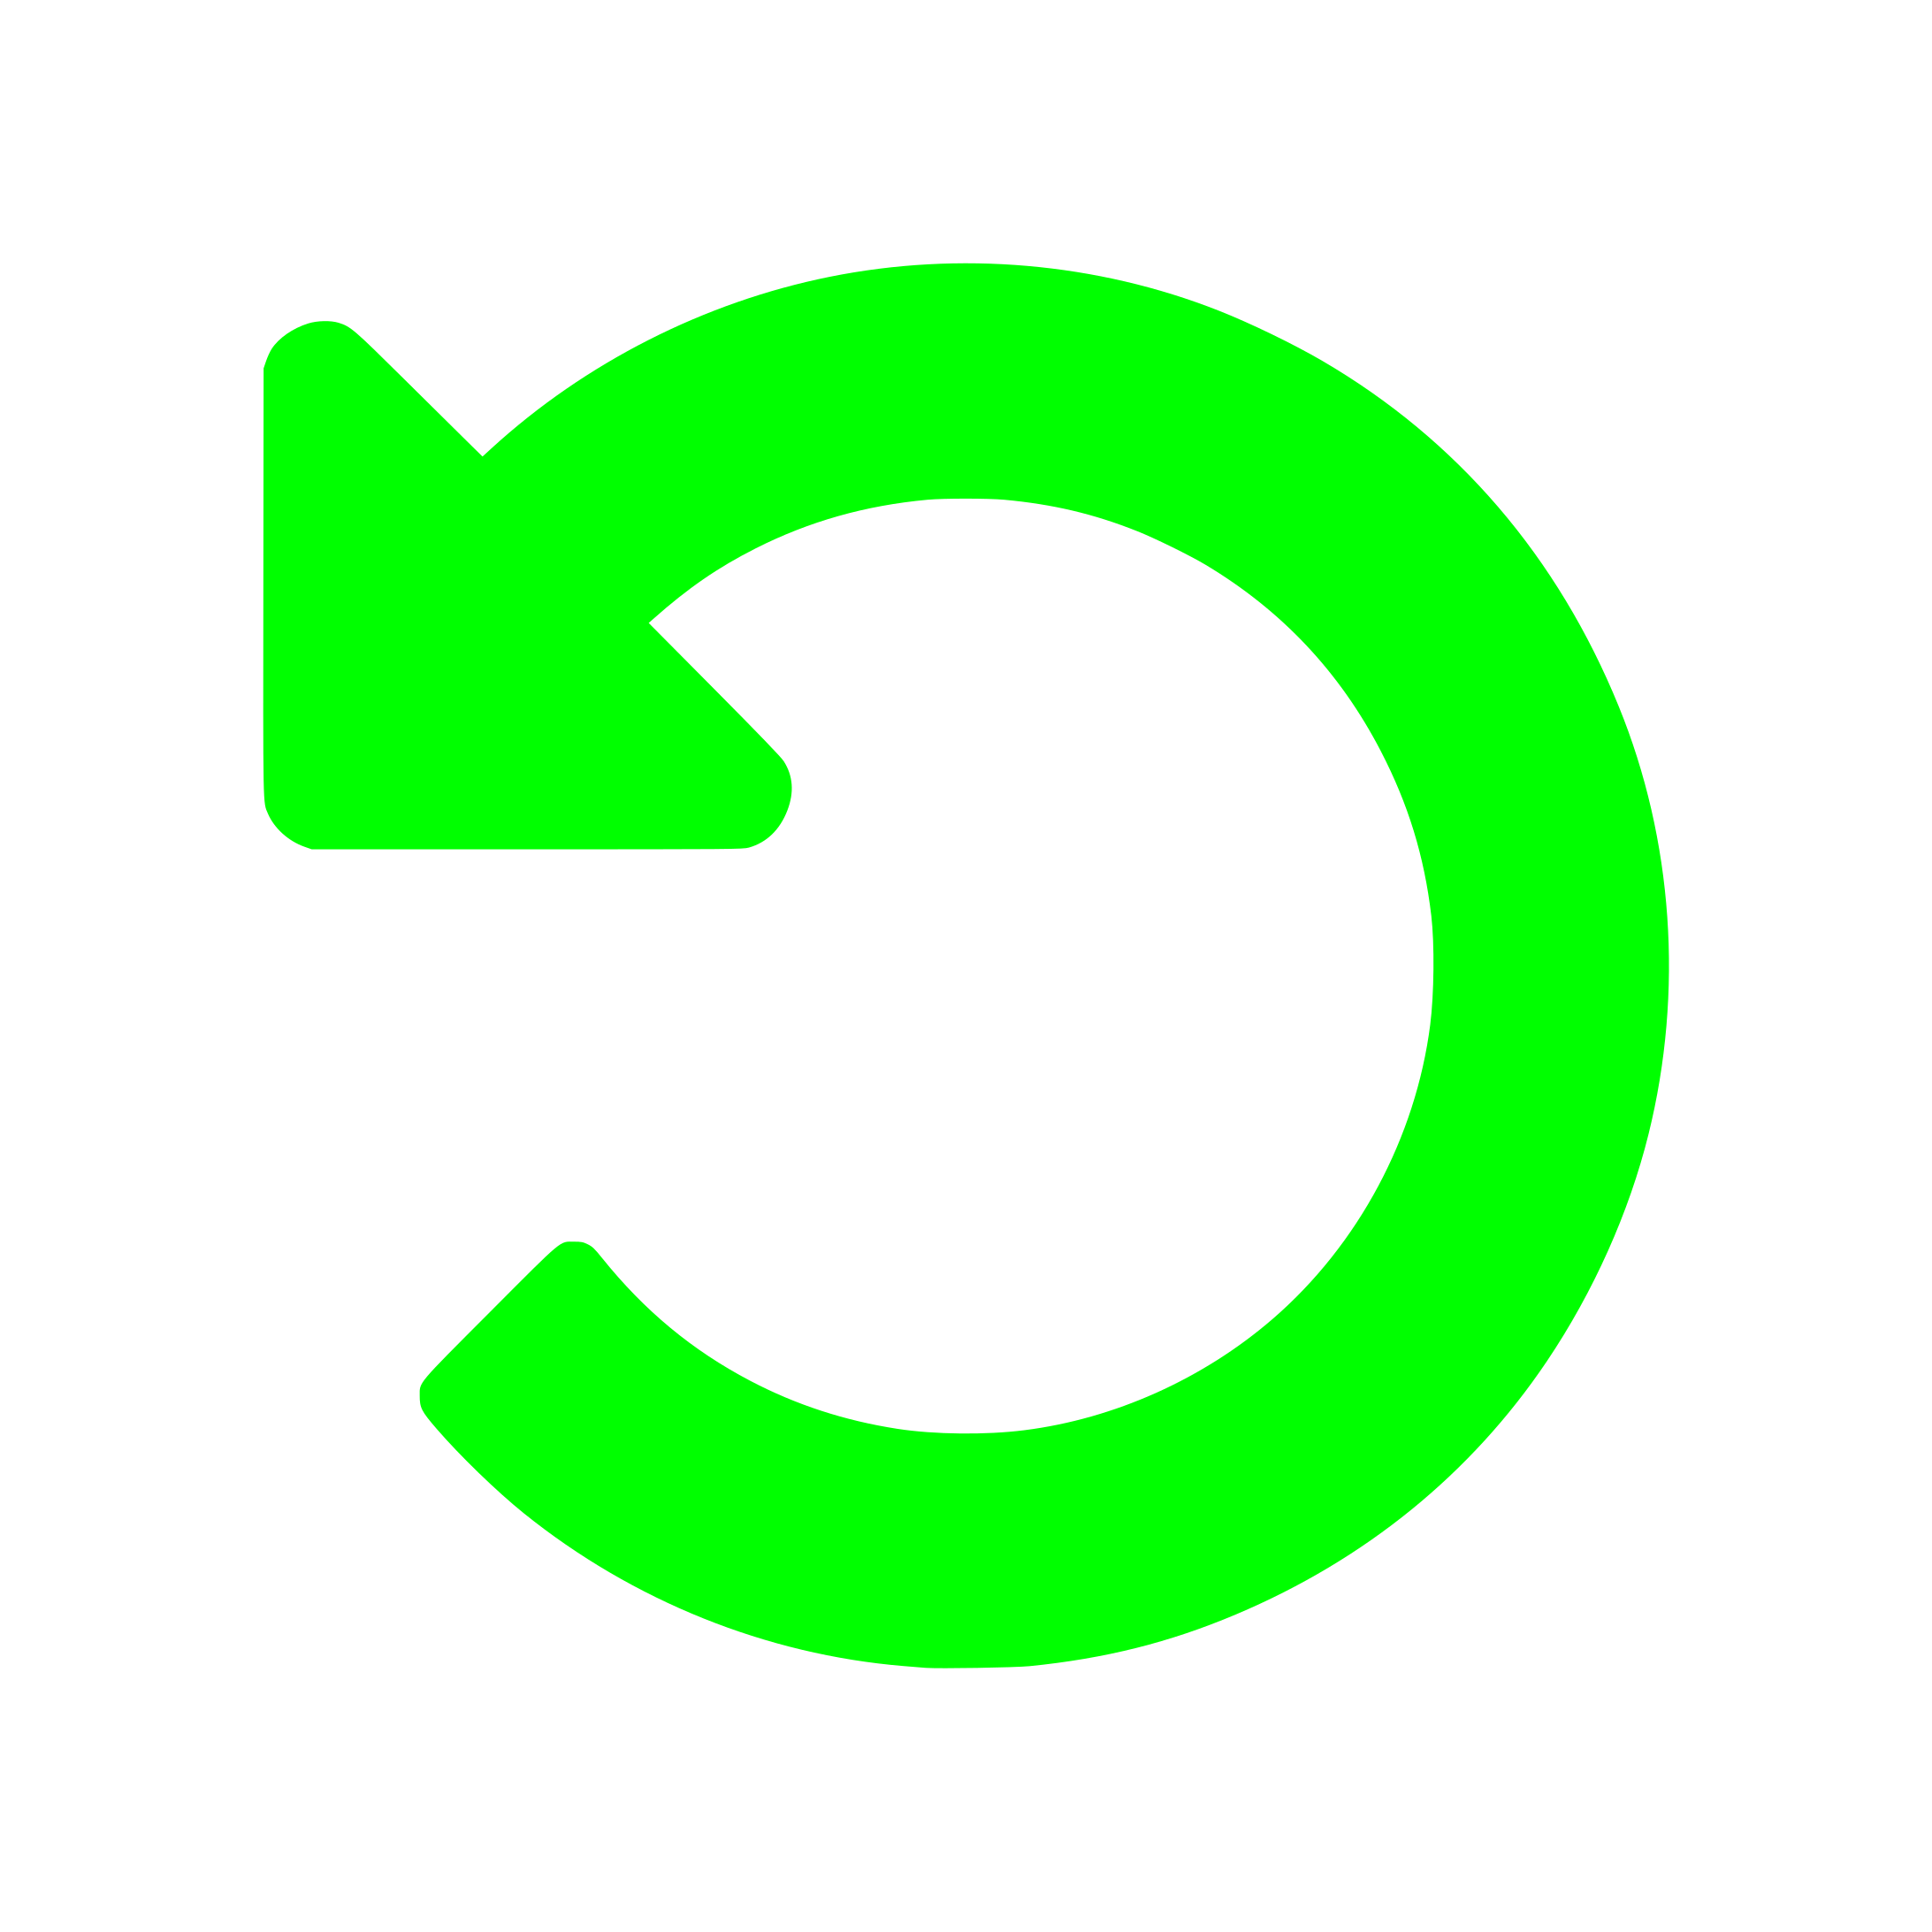 File icon with a circular arrow